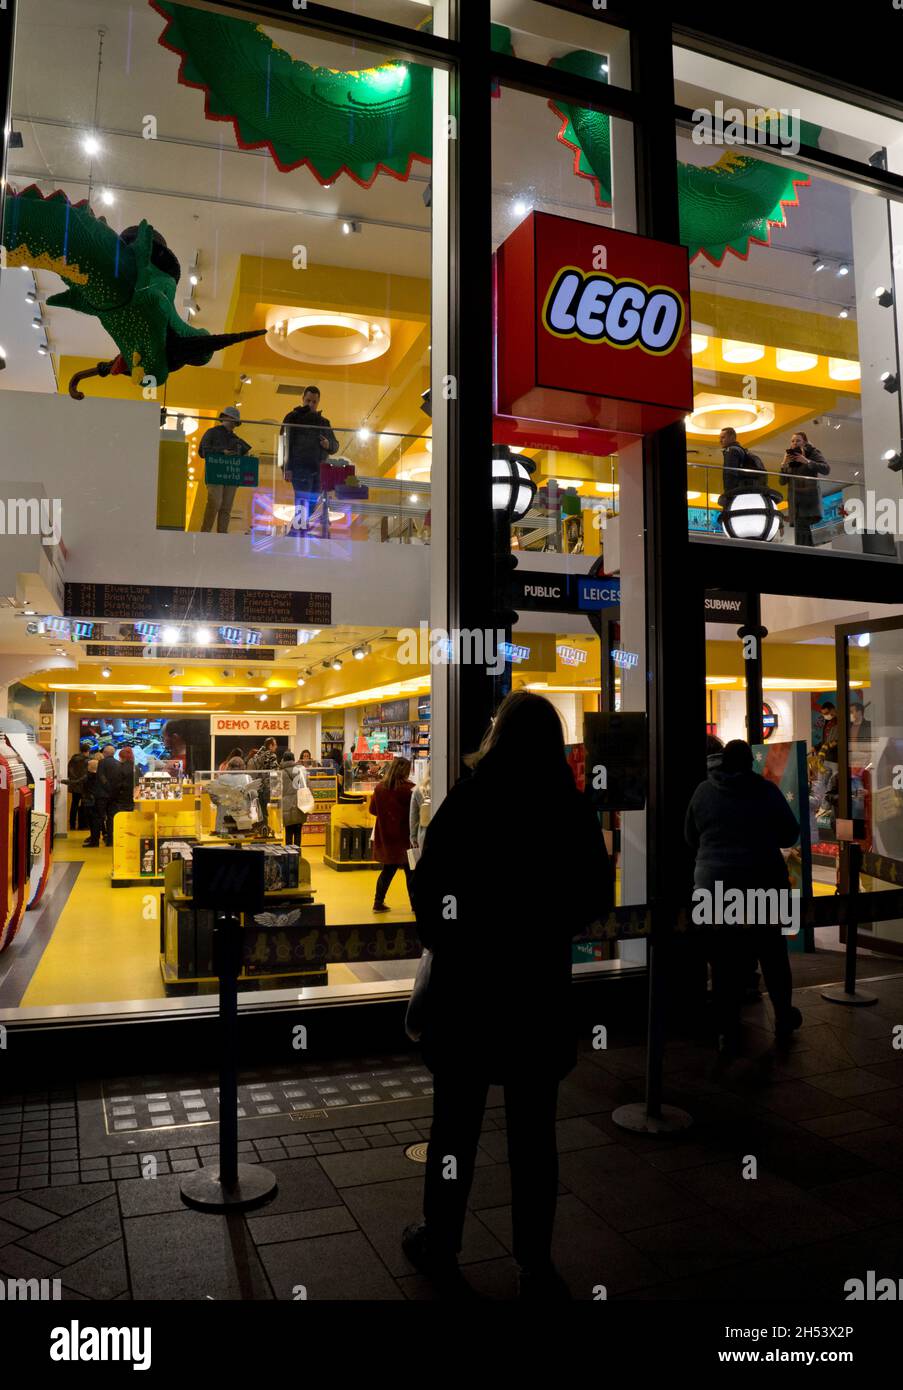 Les gens marchent devant le magasin Lego la nuit dans le West End de Londres, Angleterre, Royaume-Uni Banque D'Images